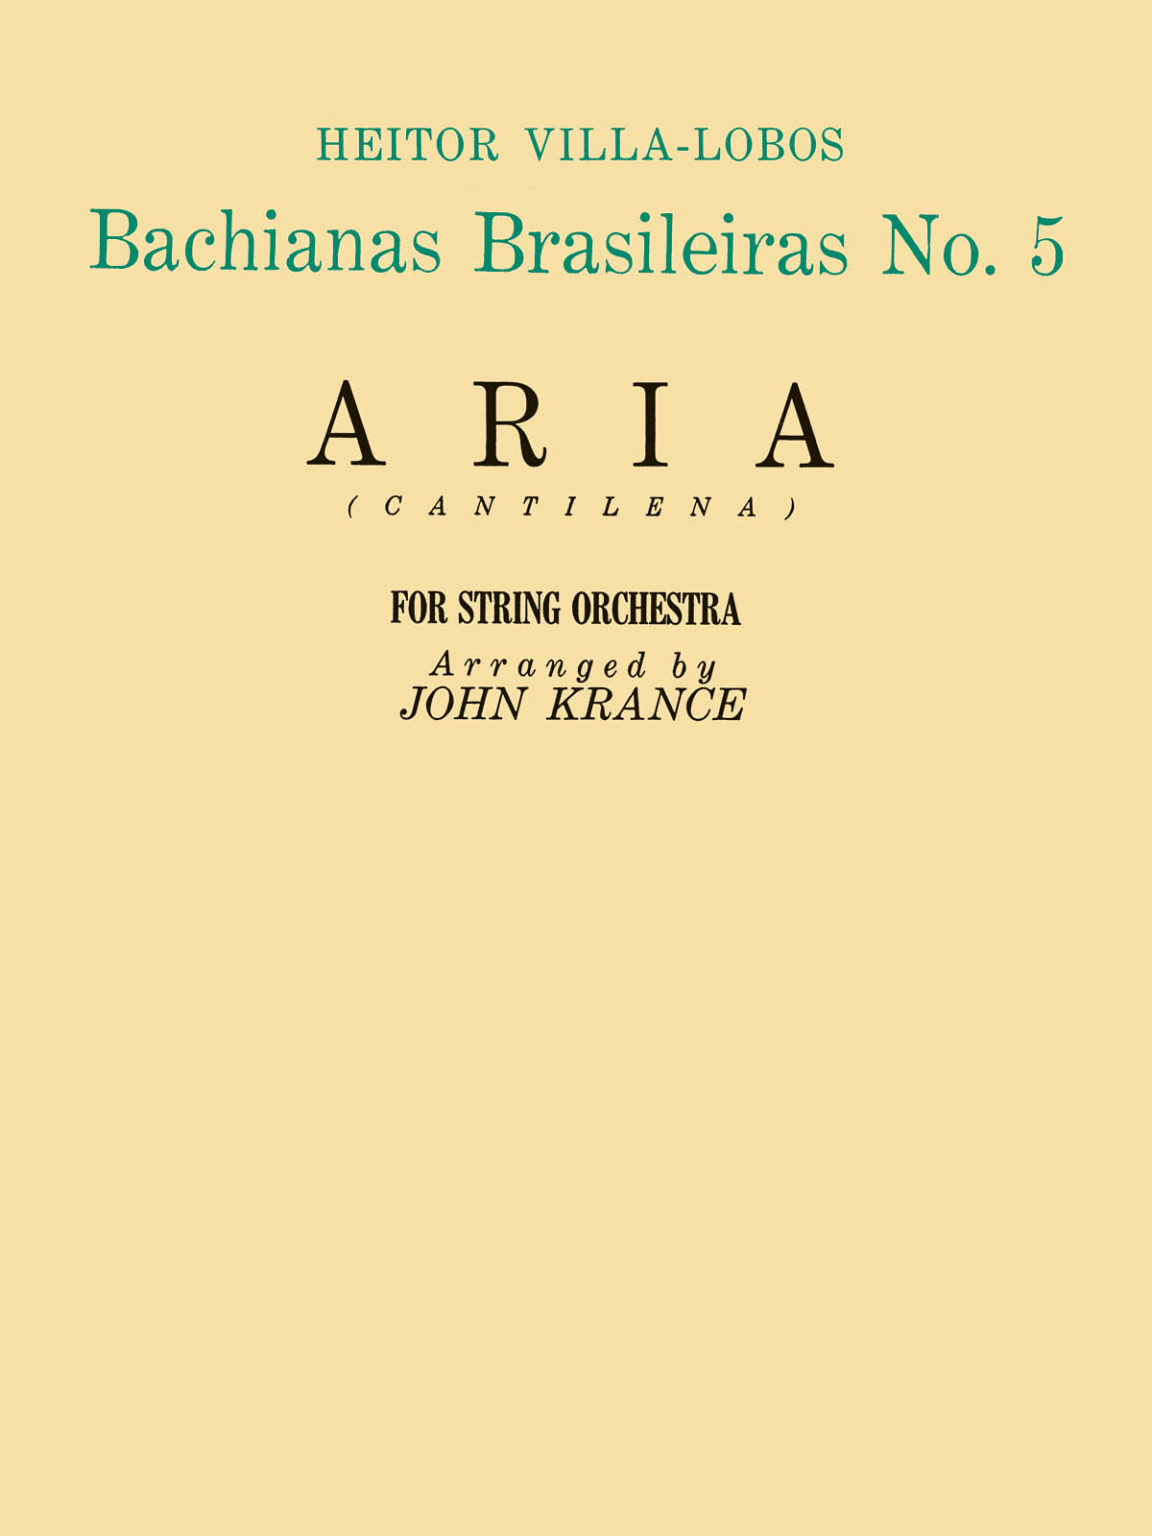 Aria aus Bachianas Brasileiras No.5 para clarinete bajo y piano. Heitor Villa-Lobos